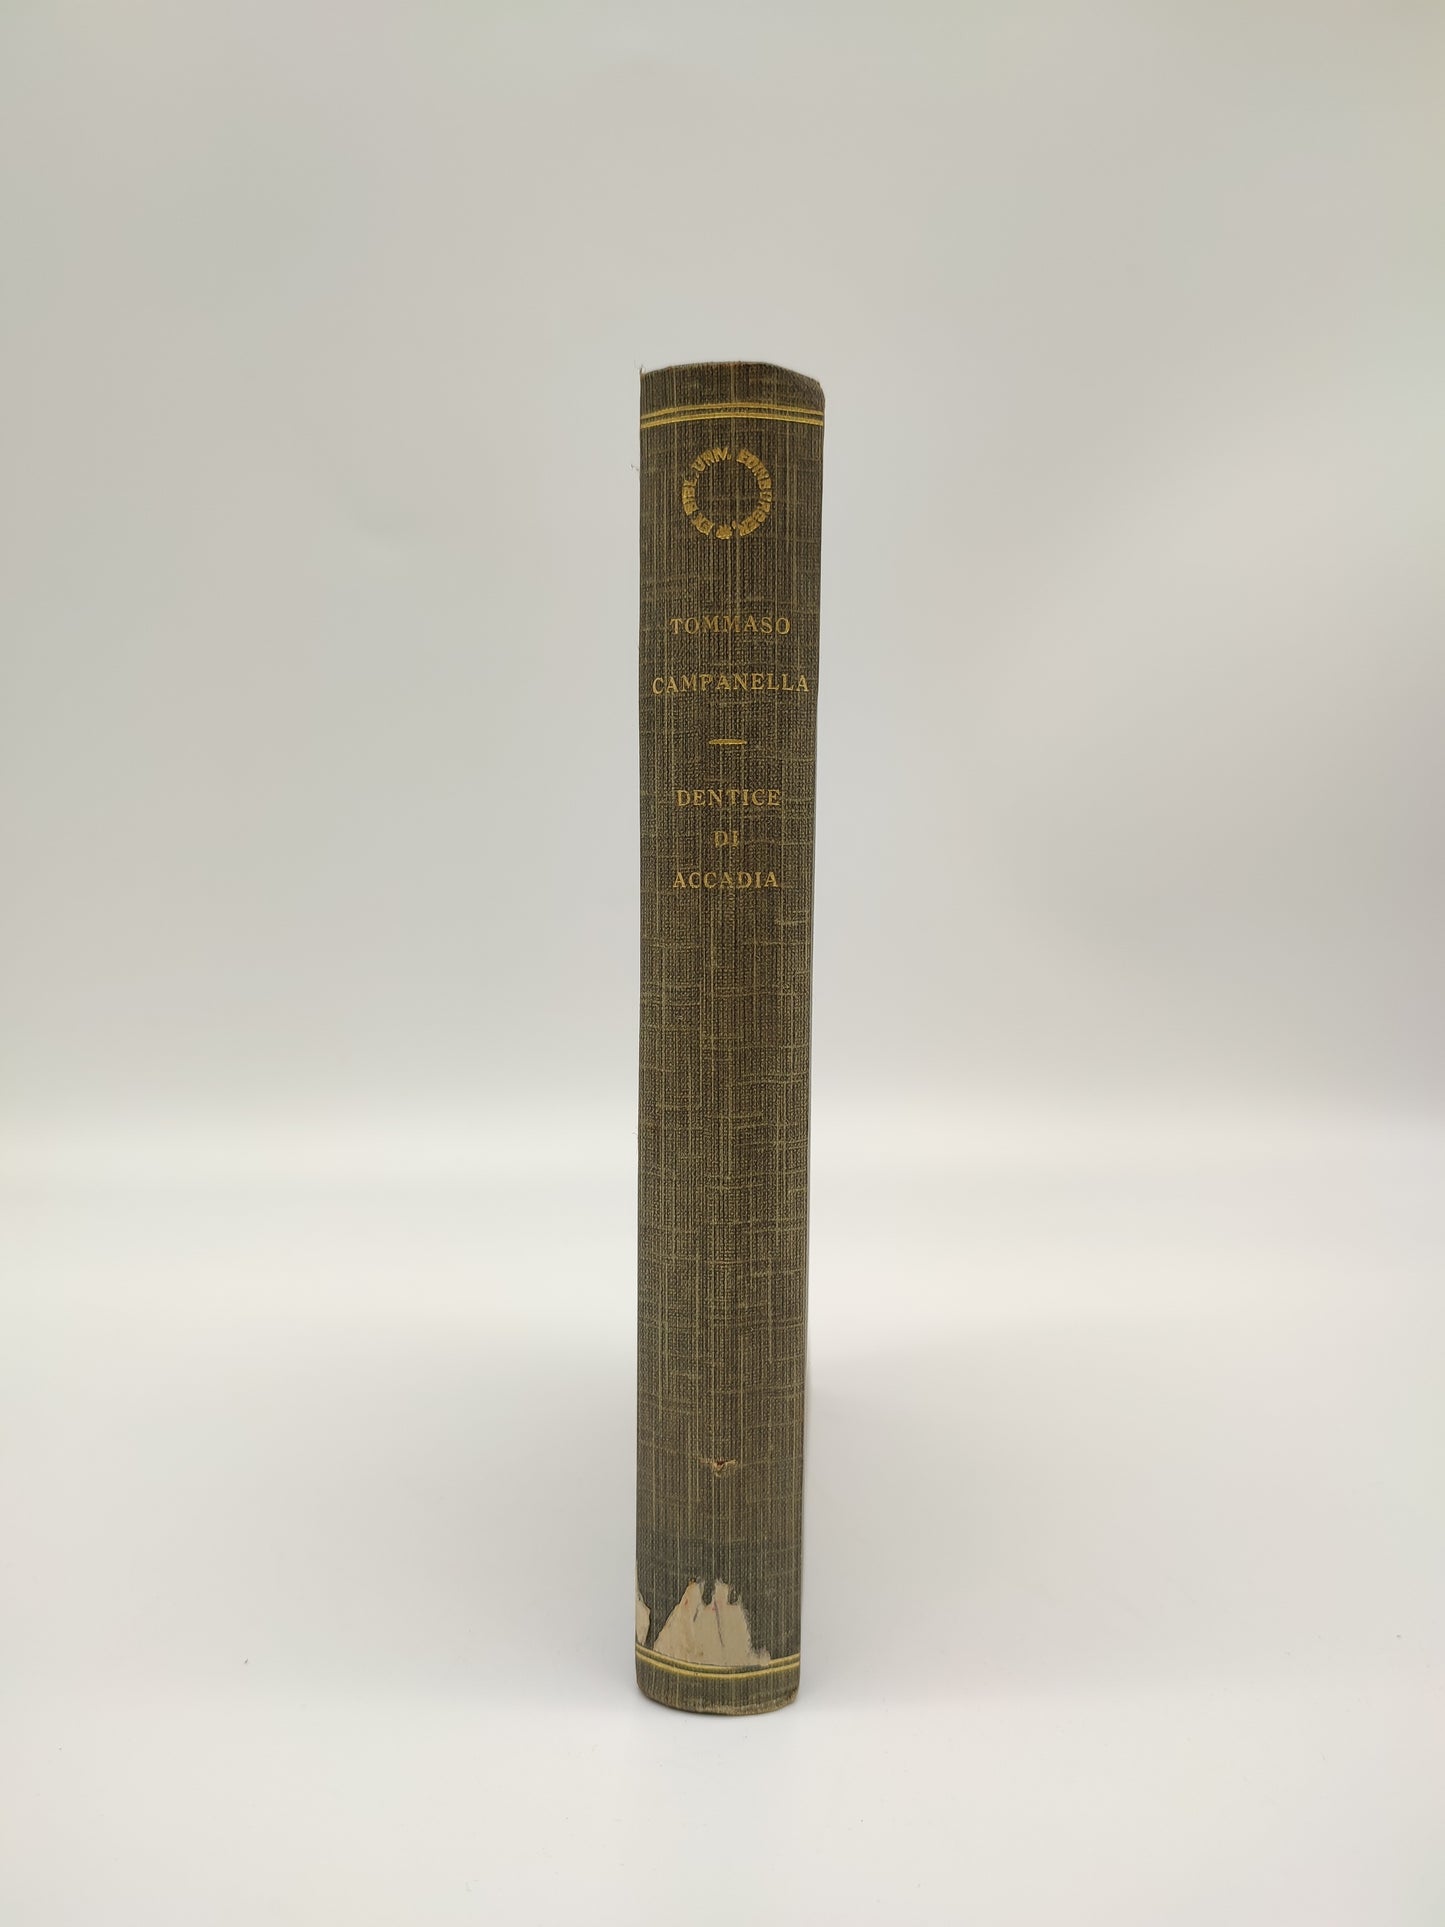 69798 Tommaso Campanella, C. Dentice di Accadia, Vallecchi Editore Firenze, 1921